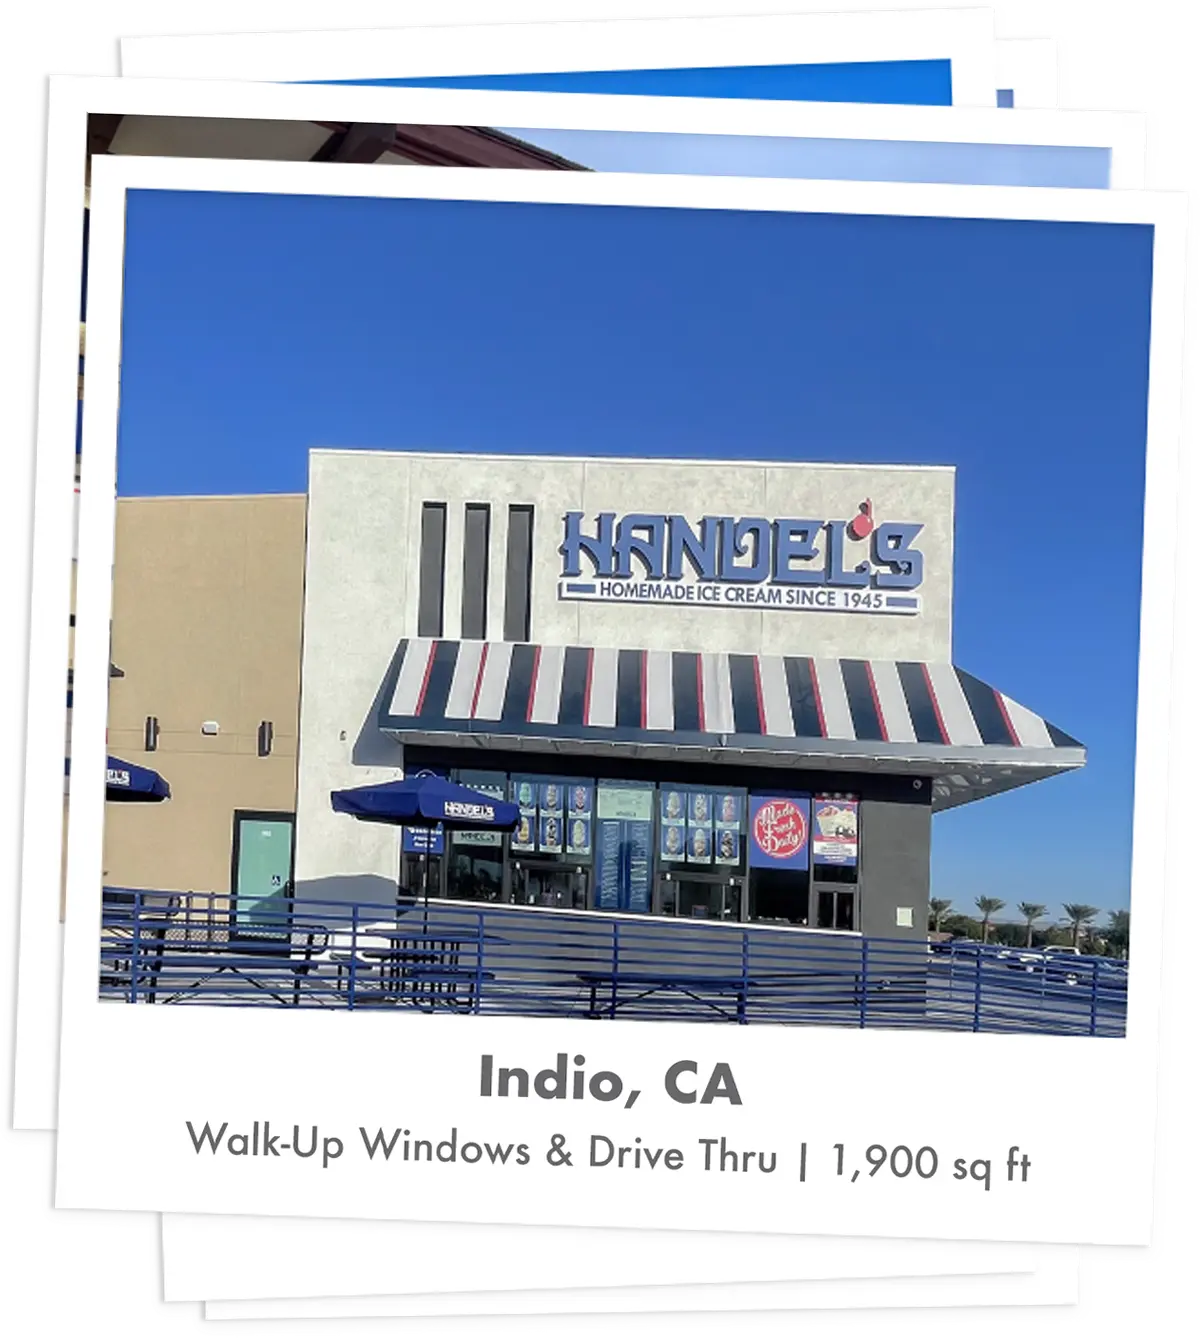 Handel's Ice Cream store in Indio, California